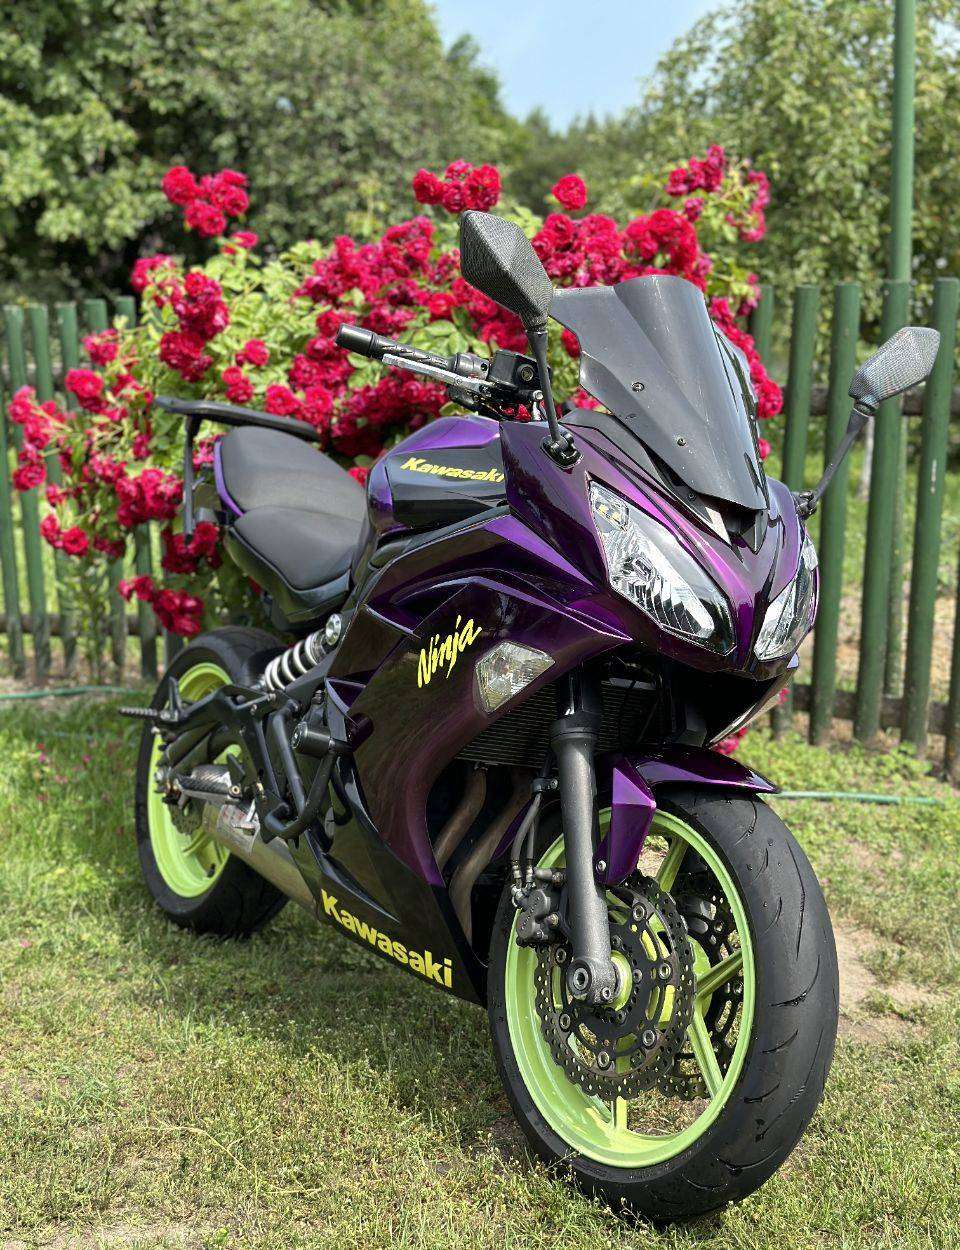 Купить мотоцикл Kawasaki в Беларуси в кредит - цены, характеристики, фото. 